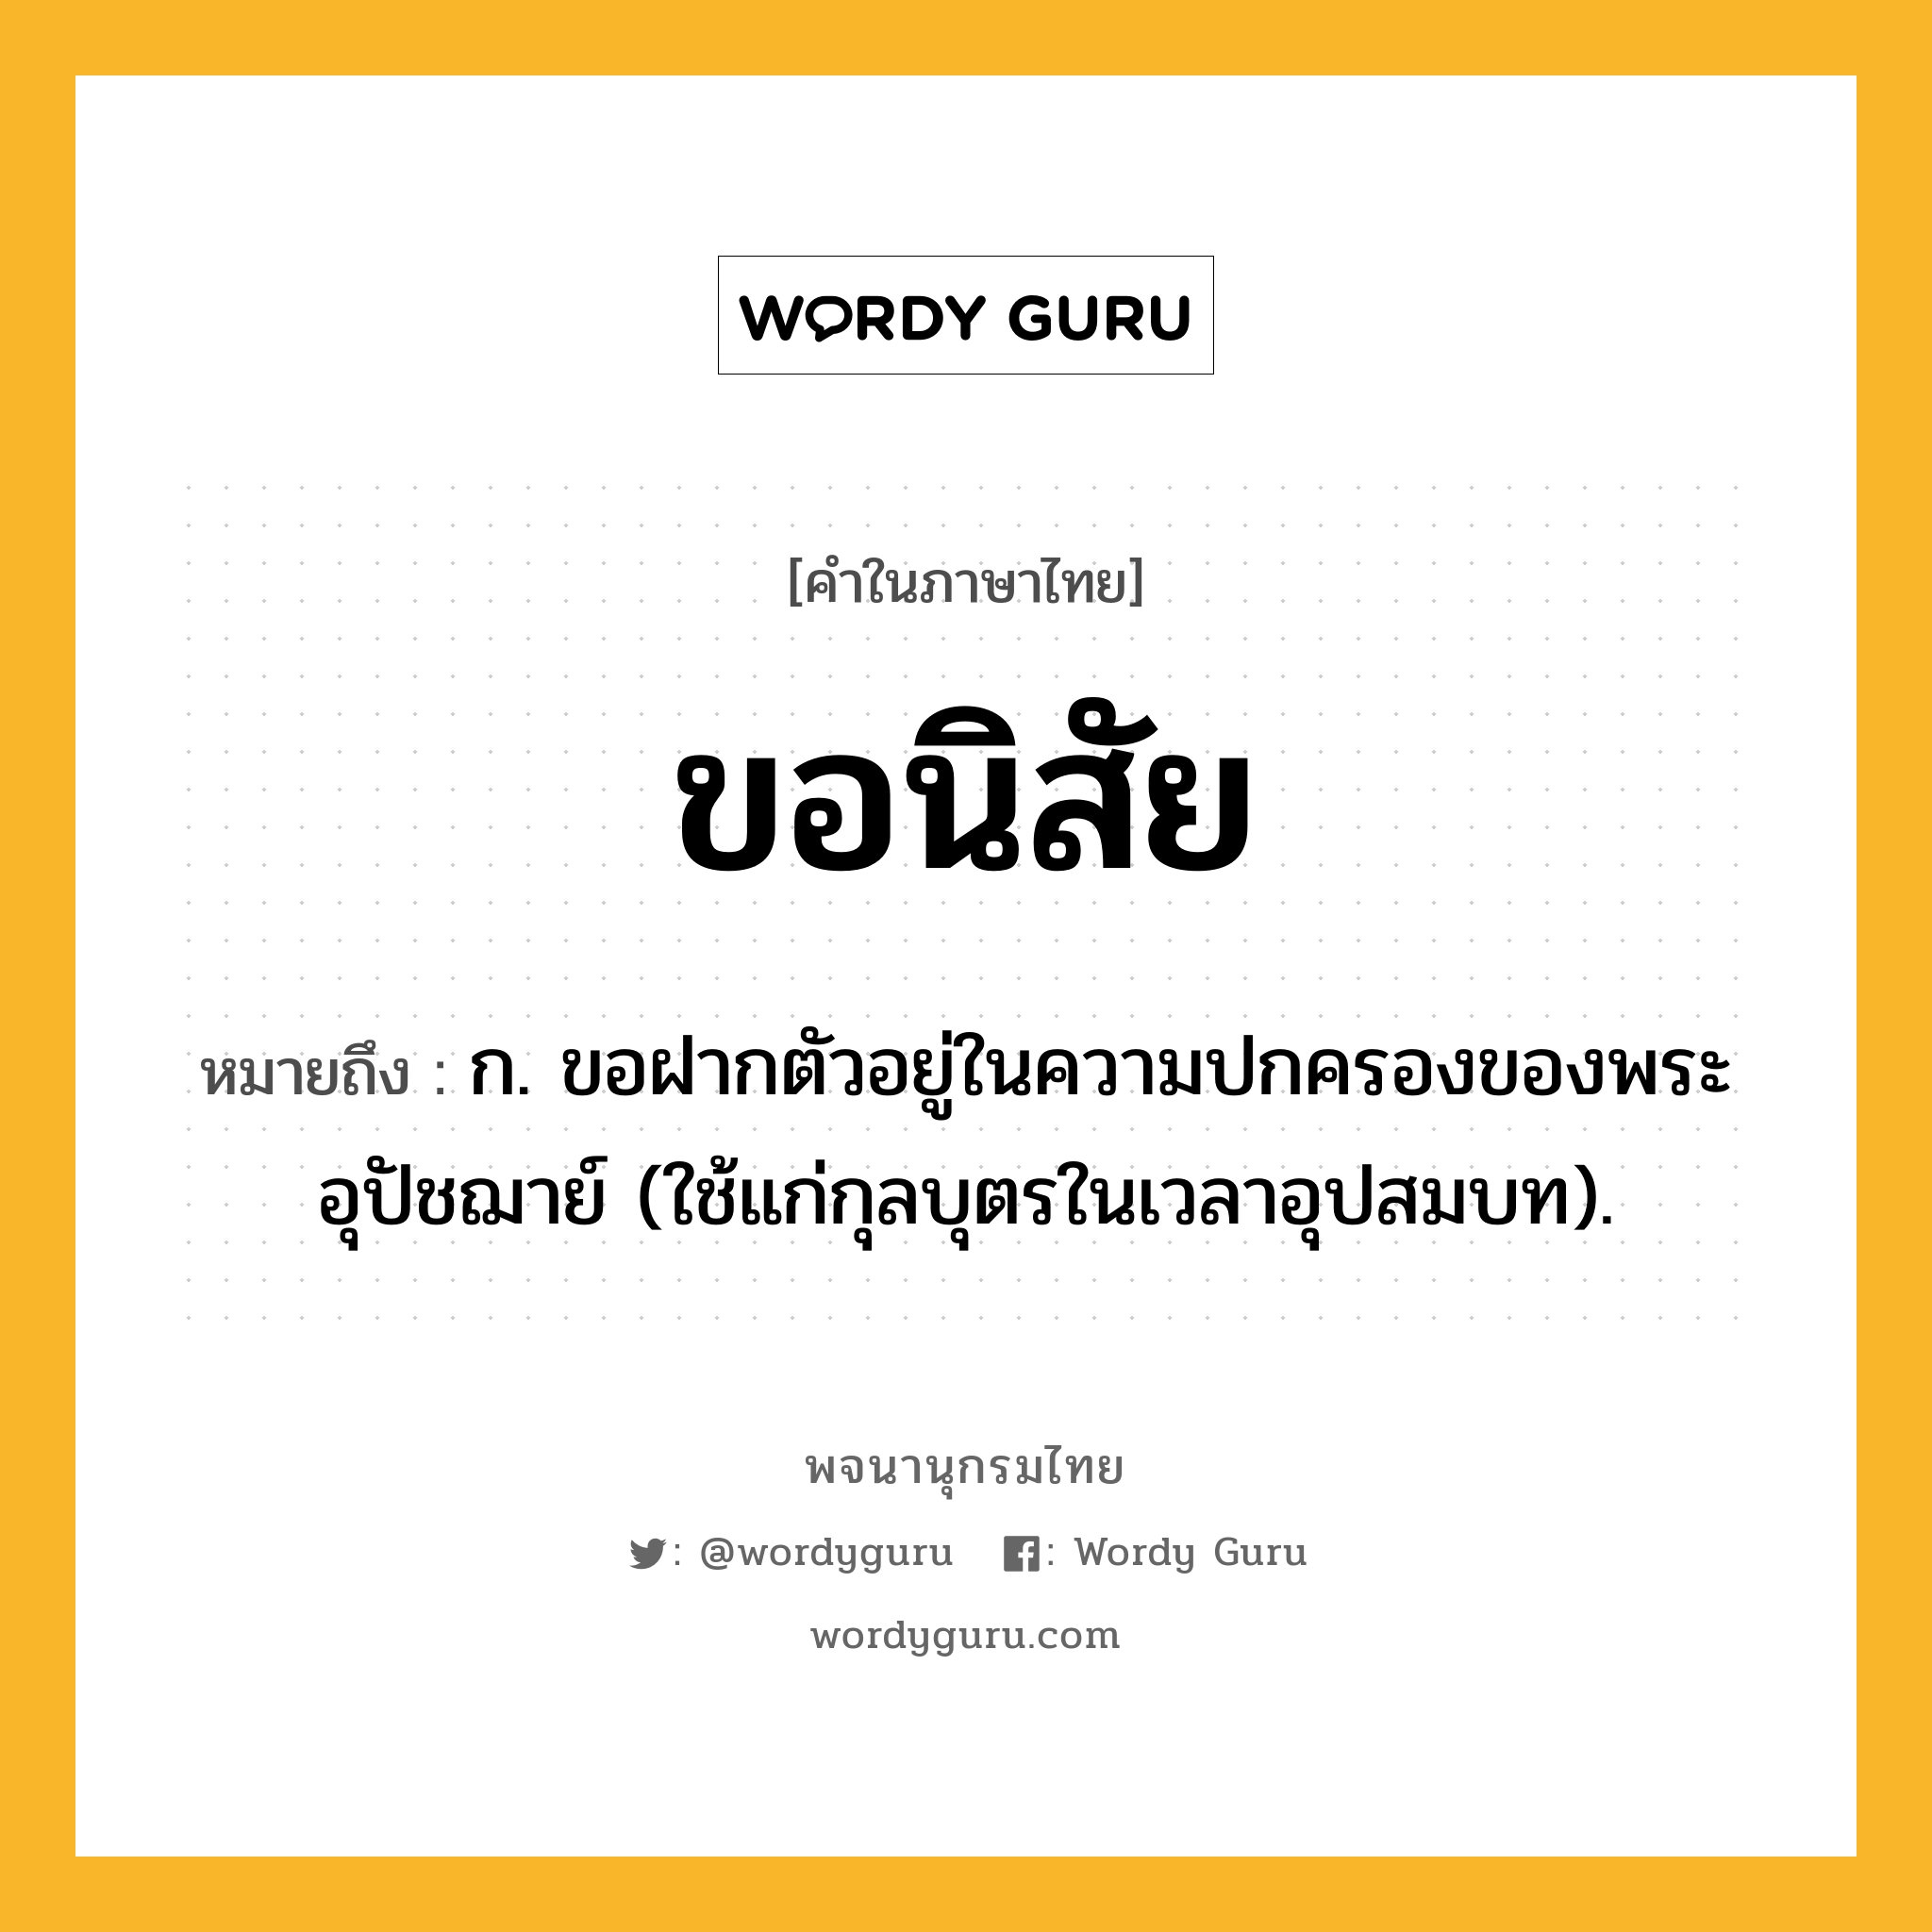 ขอนิสัย ความหมาย หมายถึงอะไร?, คำในภาษาไทย ขอนิสัย หมายถึง ก. ขอฝากตัวอยู่ในความปกครองของพระอุปัชฌาย์ (ใช้แก่กุลบุตรในเวลาอุปสมบท).